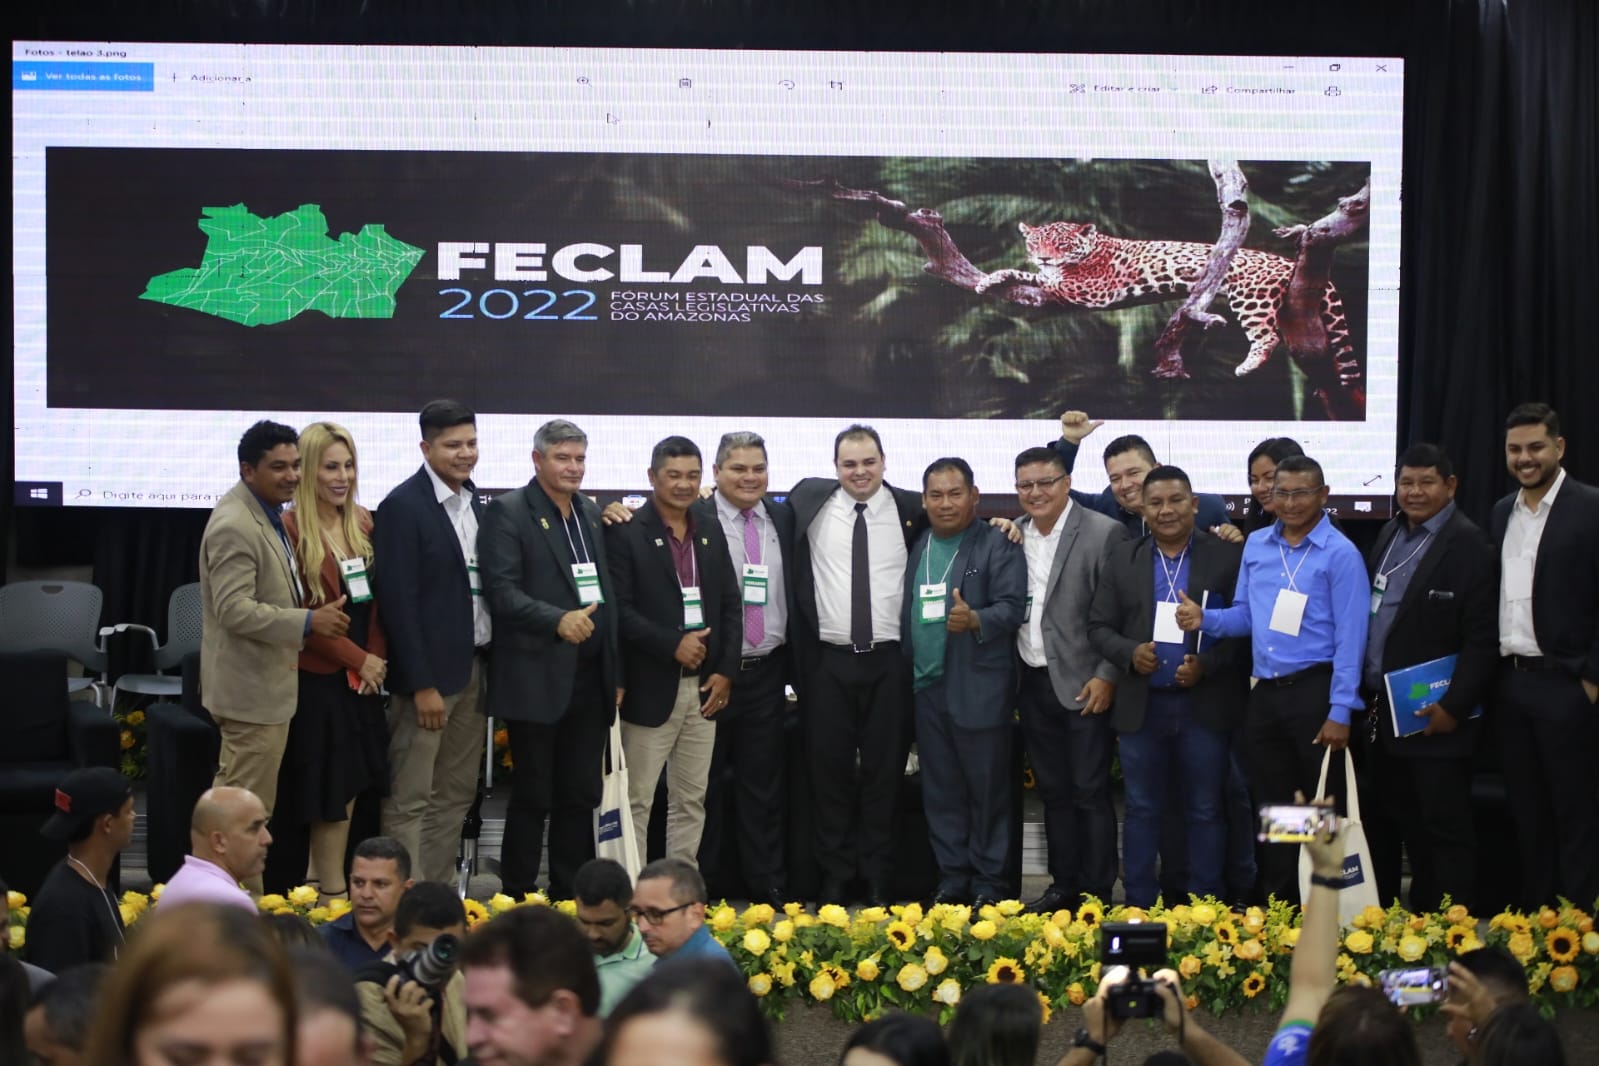 02 FoCC81rum Estadual das Casas Legislativas do Amazonas inicia com Oficinas TemaCC81ticas na quarta feira 19